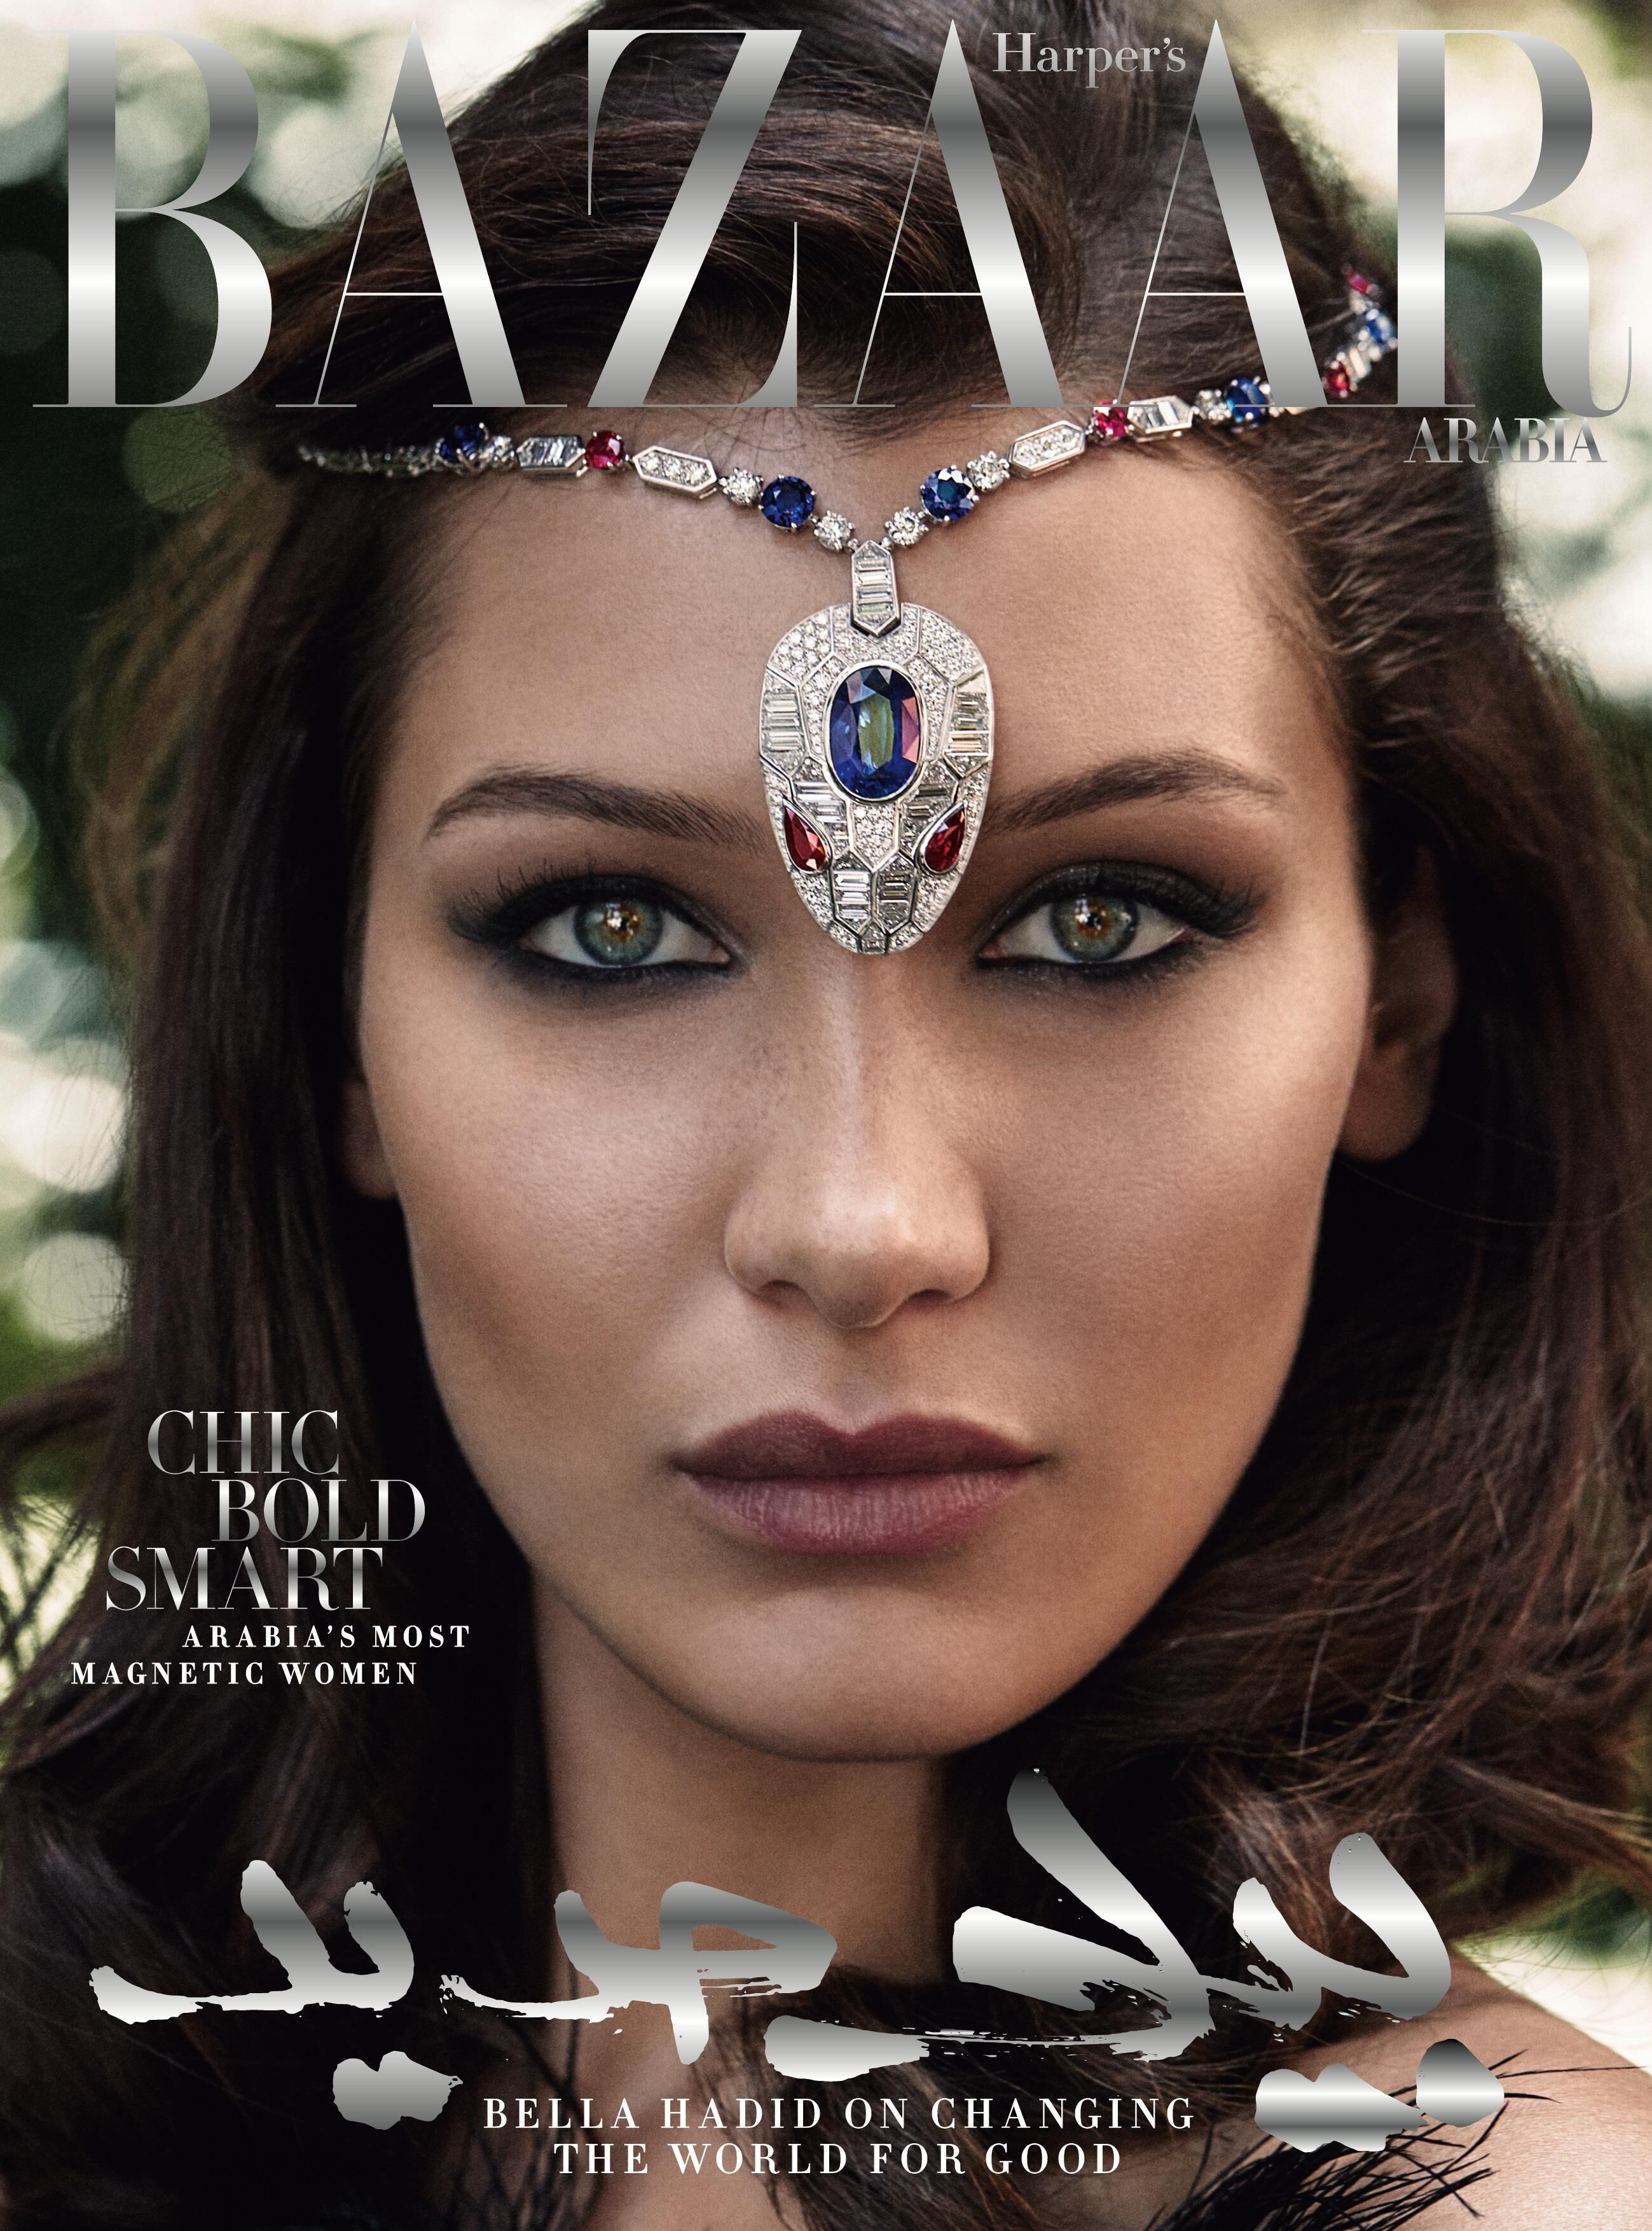 Revealed: Bazaar's October Cover Star Bella Hadid | Harper's Bazaar Arabia